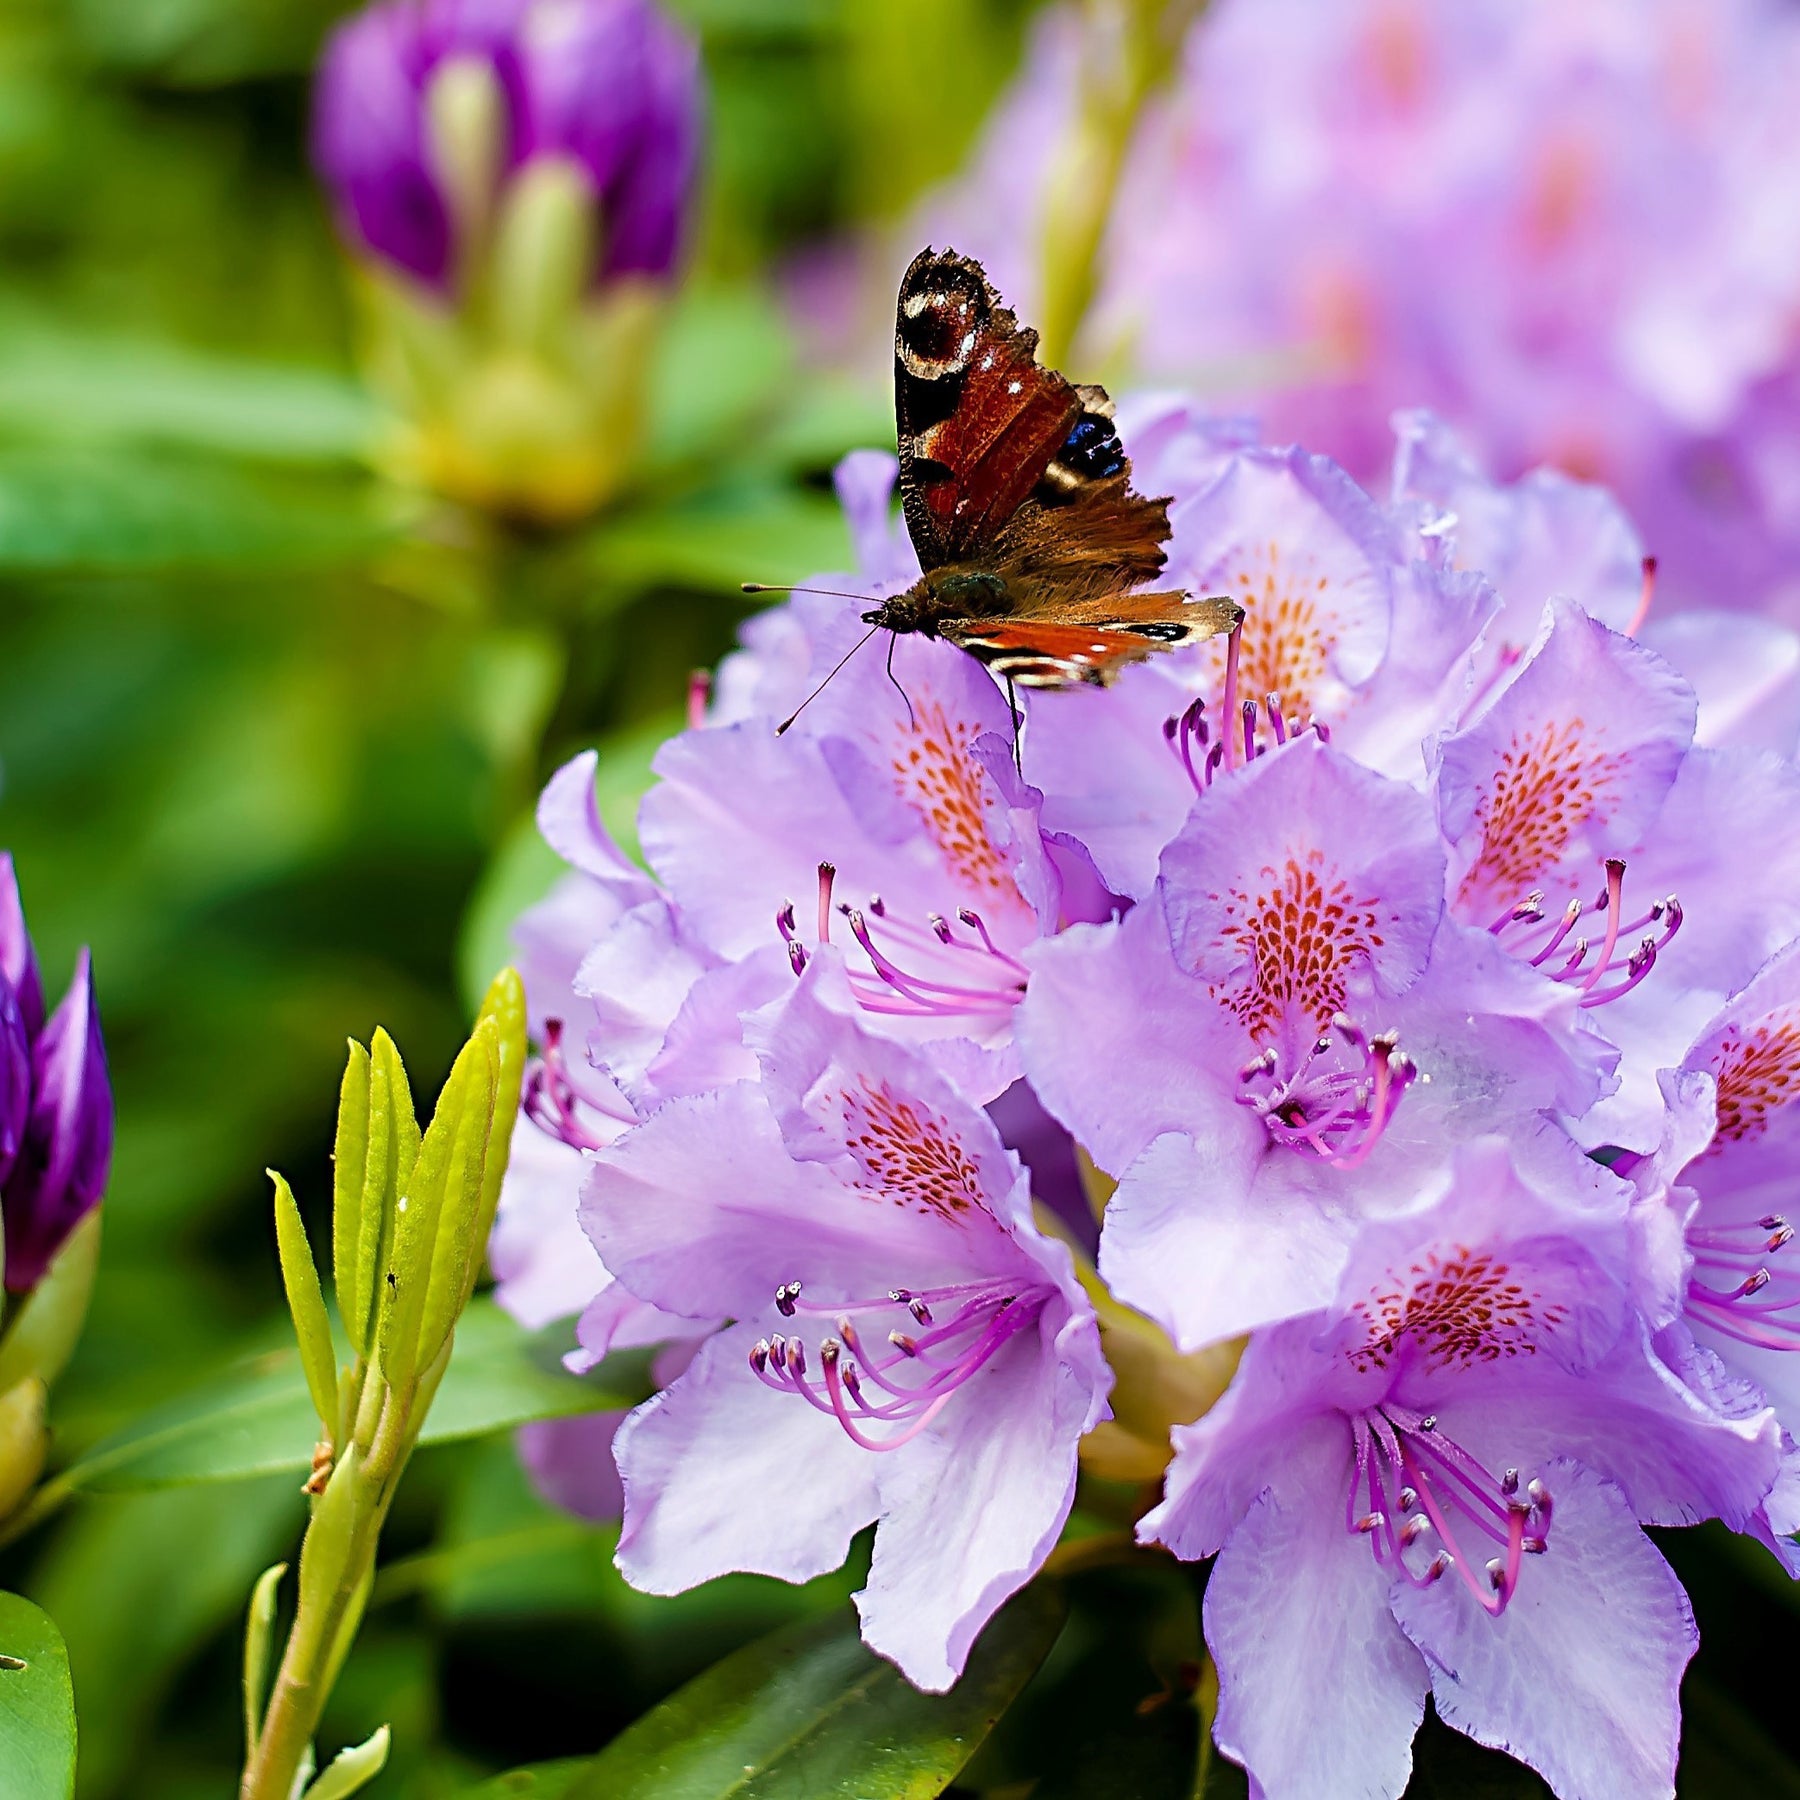 Rhododendron catawbiense grandiflorum - Rhododendron catawbiense grandiflorum - Rhododendrons